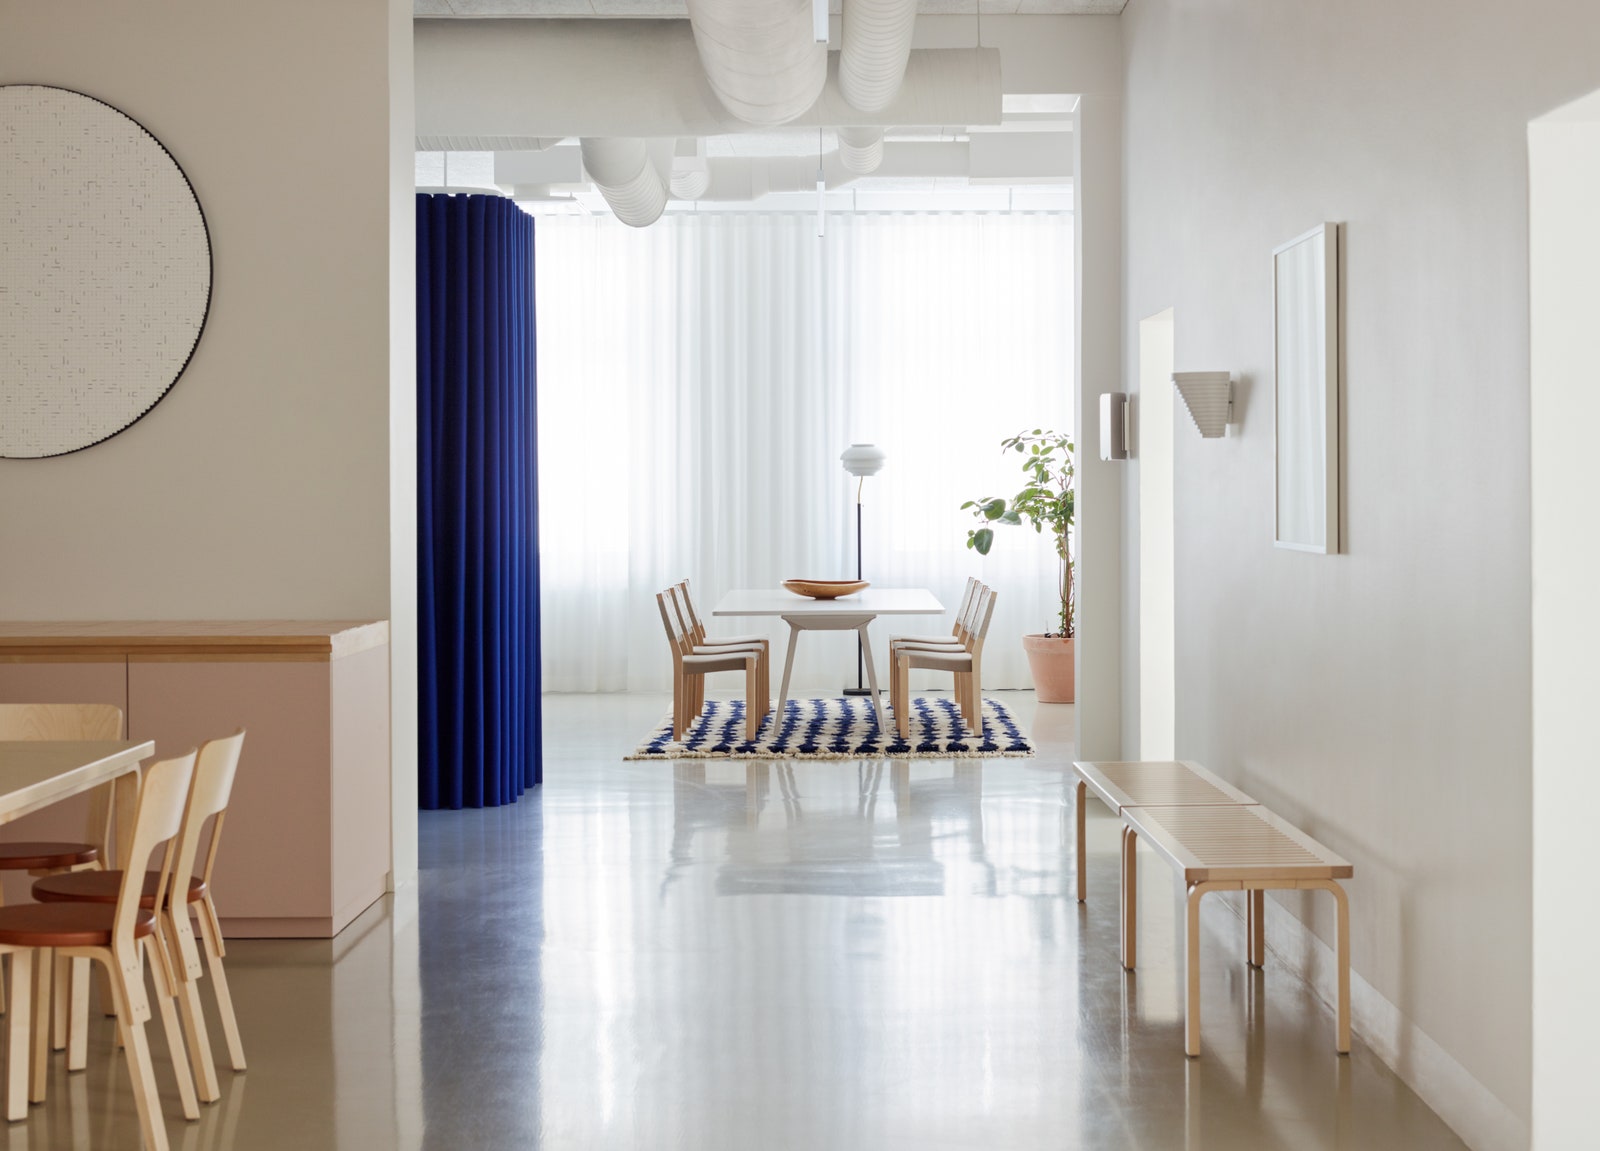 Офис Artek в Хельсинки фото интерьеров от студии дизайна Sevil Peach